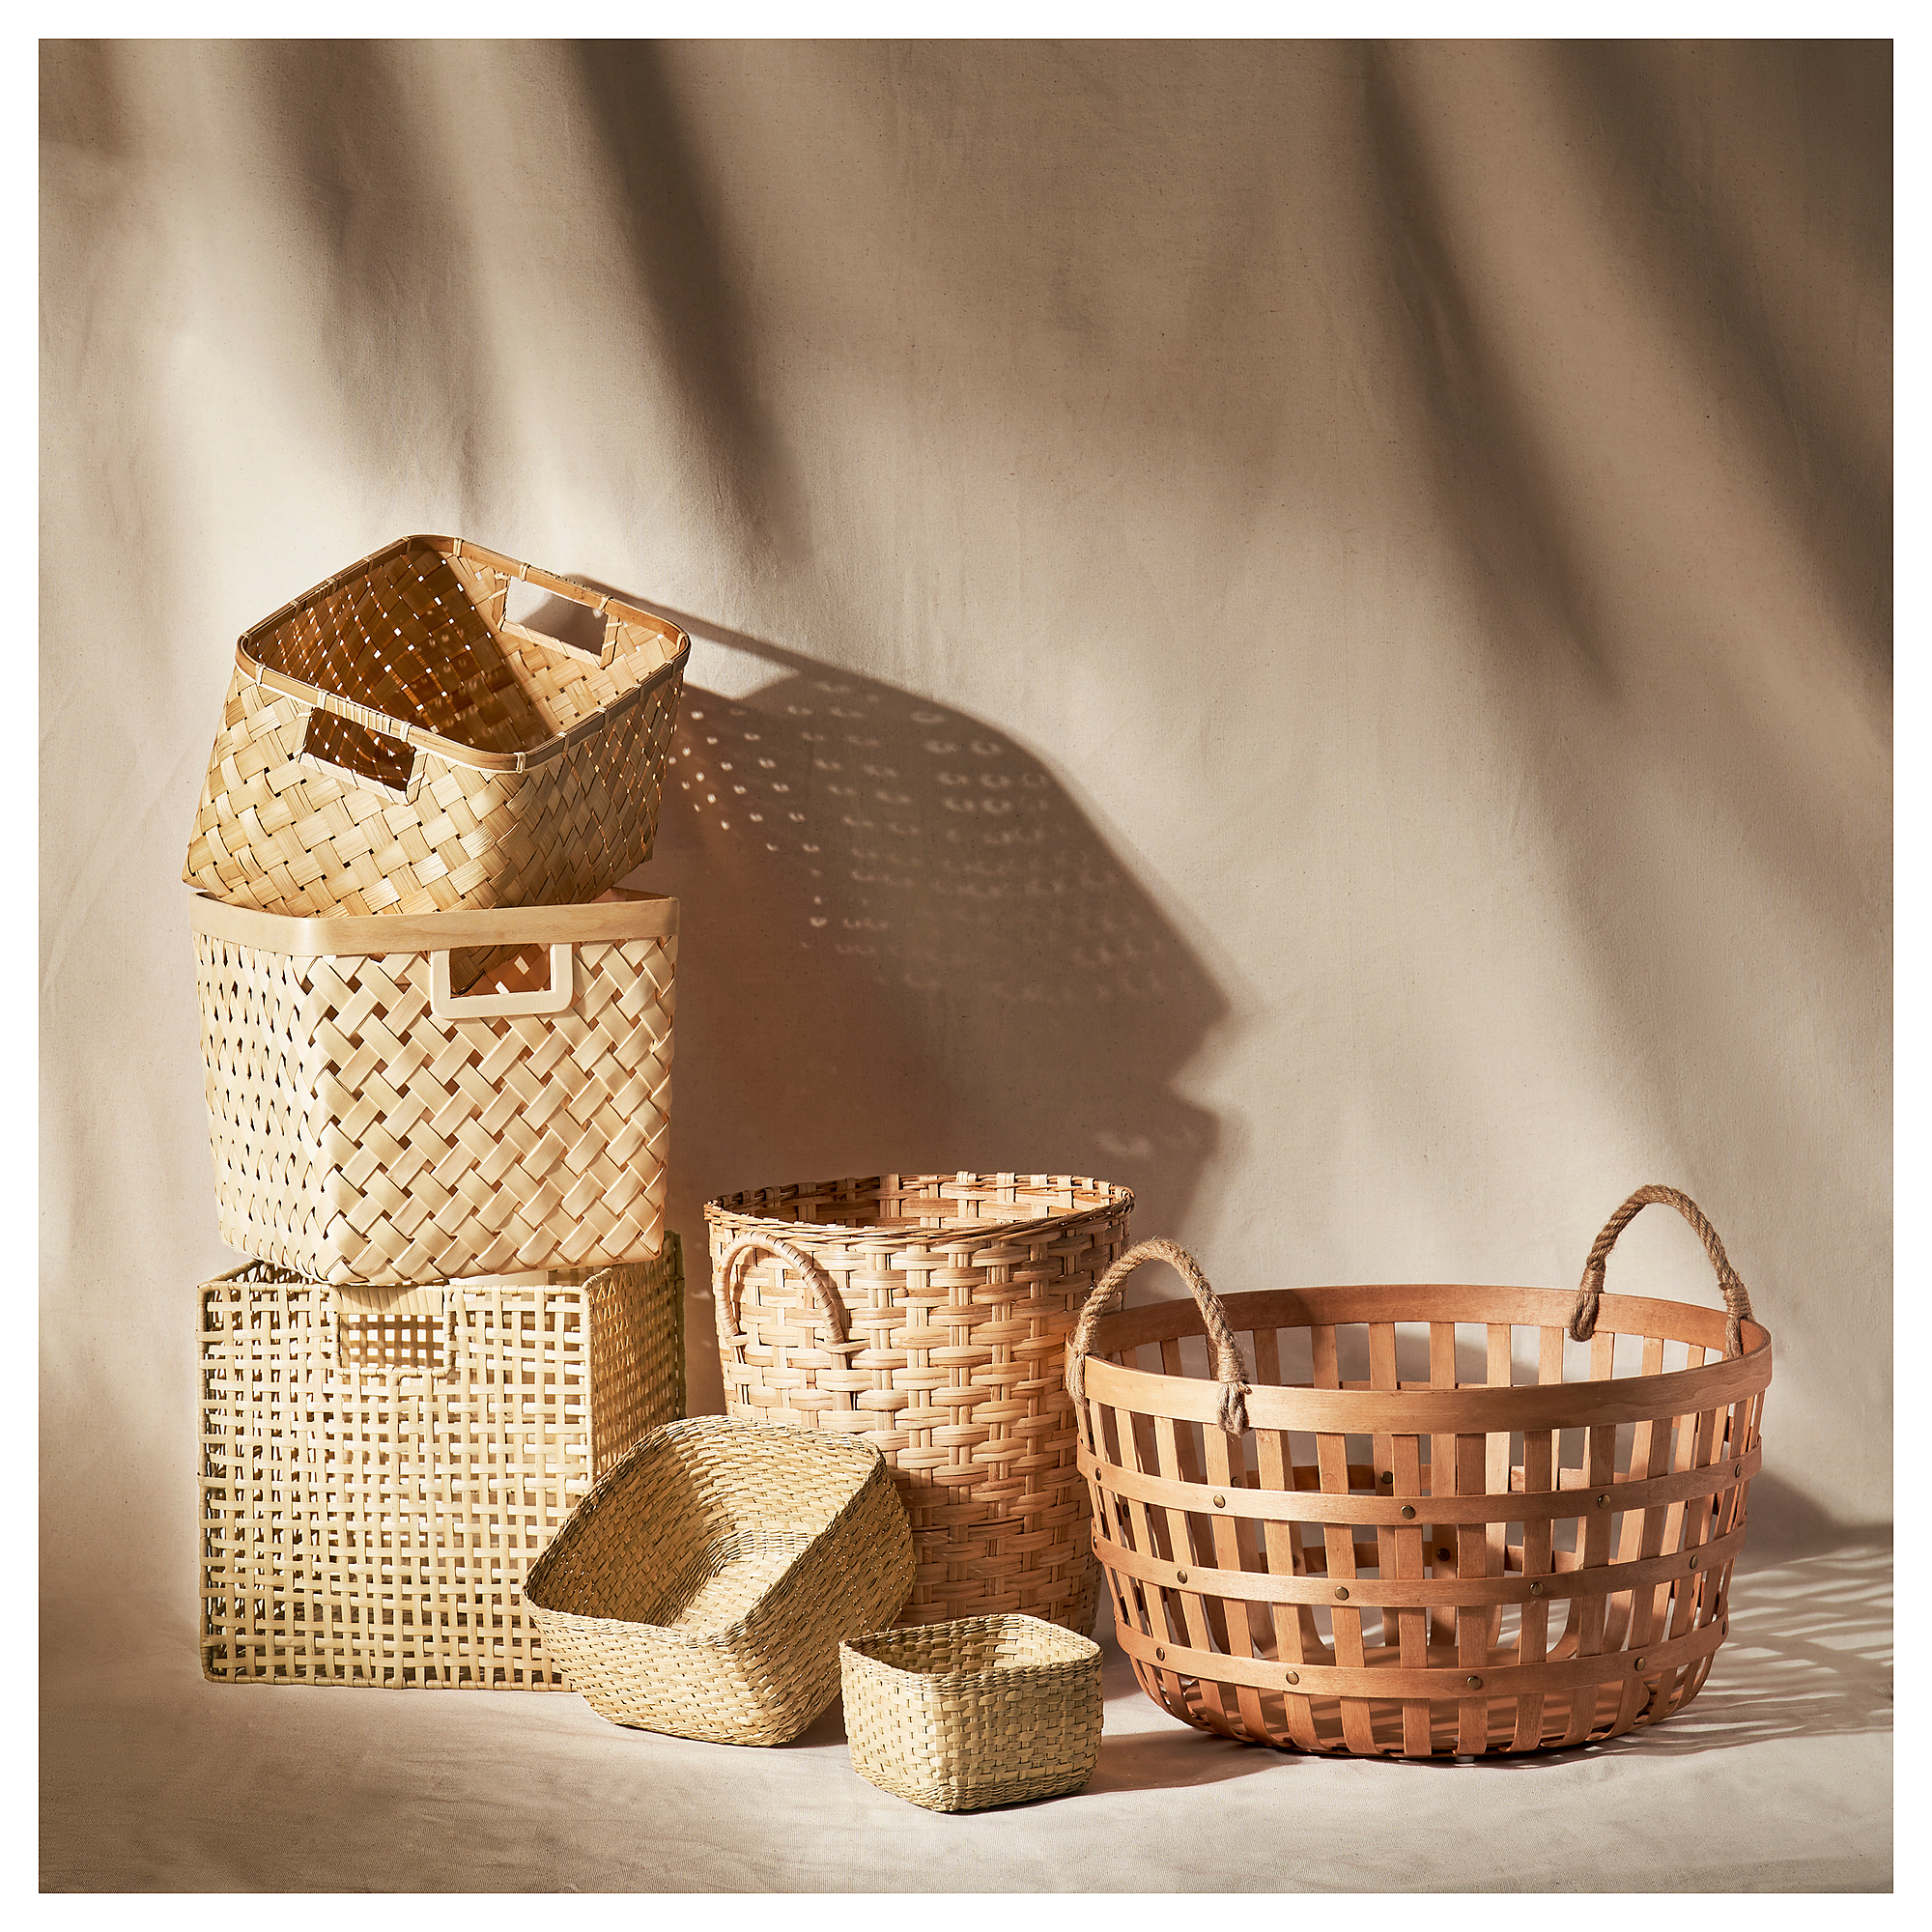 TRUMMIS Wastepaper basket, handmade rattan - IKEA